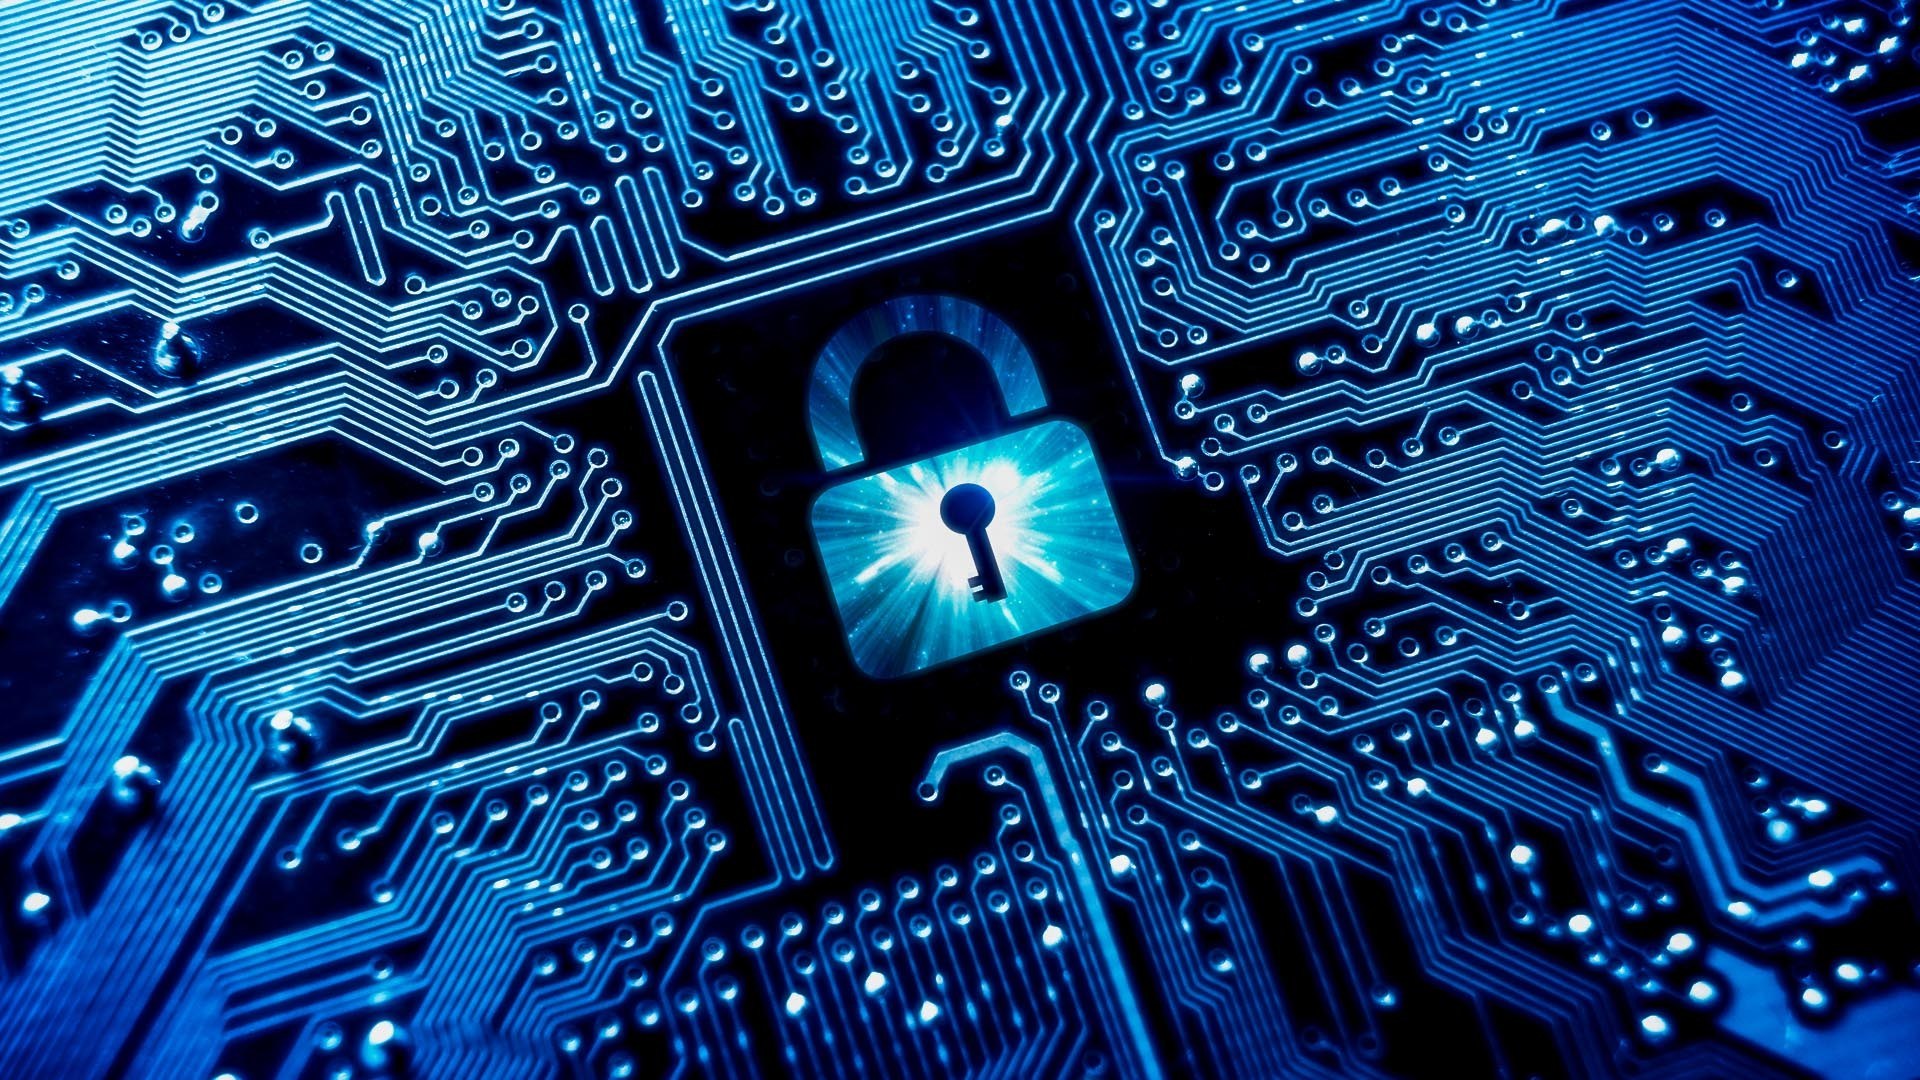 Tích hợp các công nghệ an ninh mạng vào hệ thống giúp đảm bảo an toàn cho doanh nghiệp và cá nhân. Khám phá hình ảnh liên quan đến hệ thống an ninh để hiểu rõ cách áp dụng công nghệ vào bảo mật mạng.